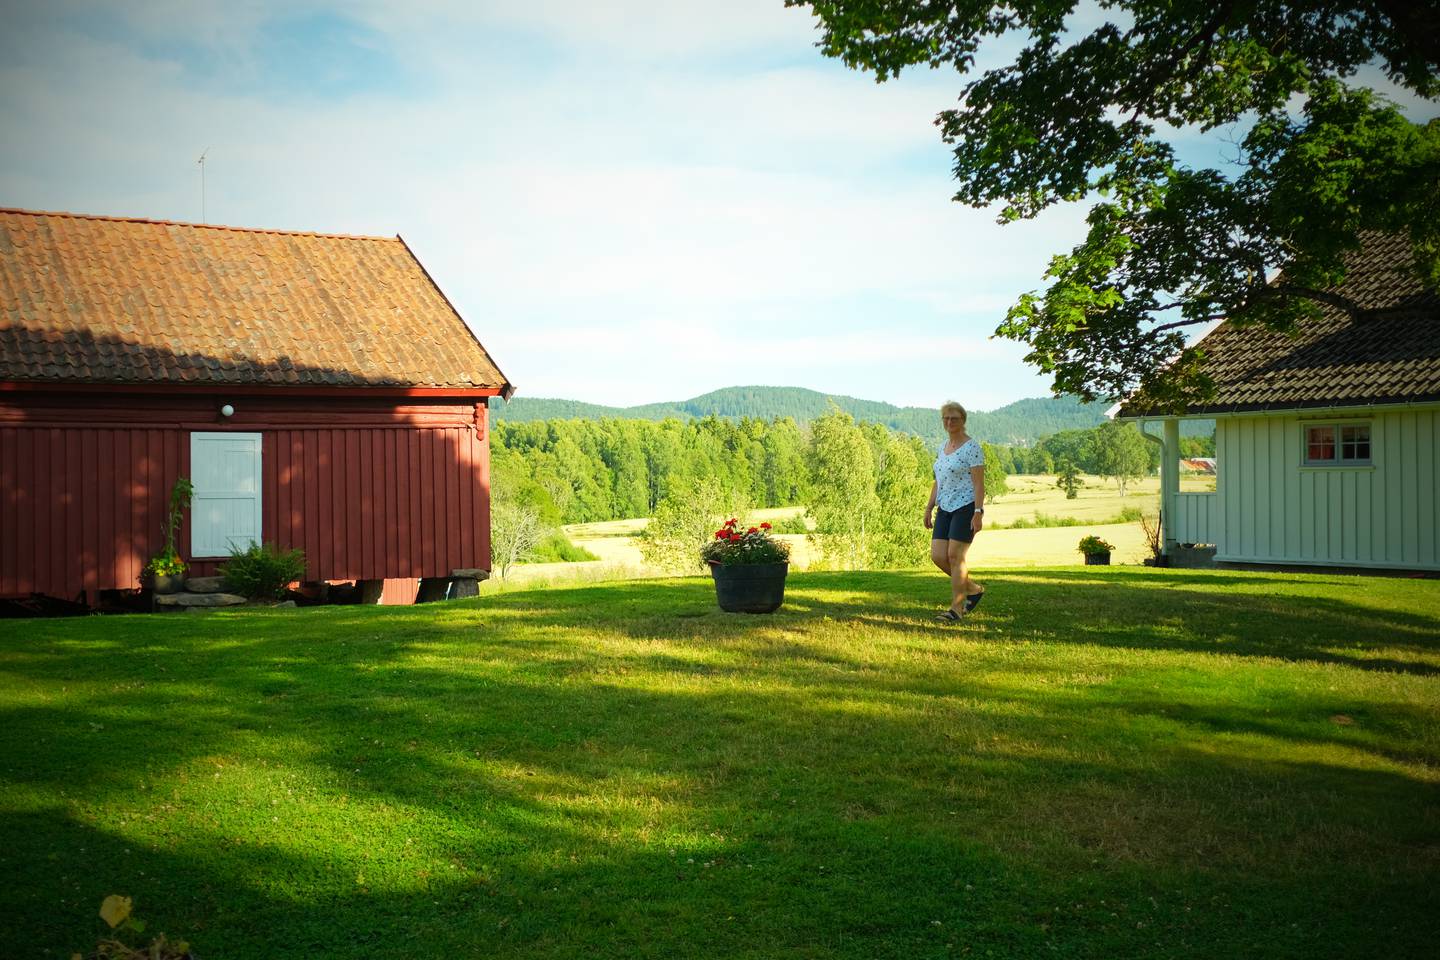 Skjerven gård har vært drevet av familien Bakke siden 1931. Gården er en av ni bruk i Maridalen som eies av Oslo Kommune, men som har vært forpaktet bort til lokale familier i generasjoner.